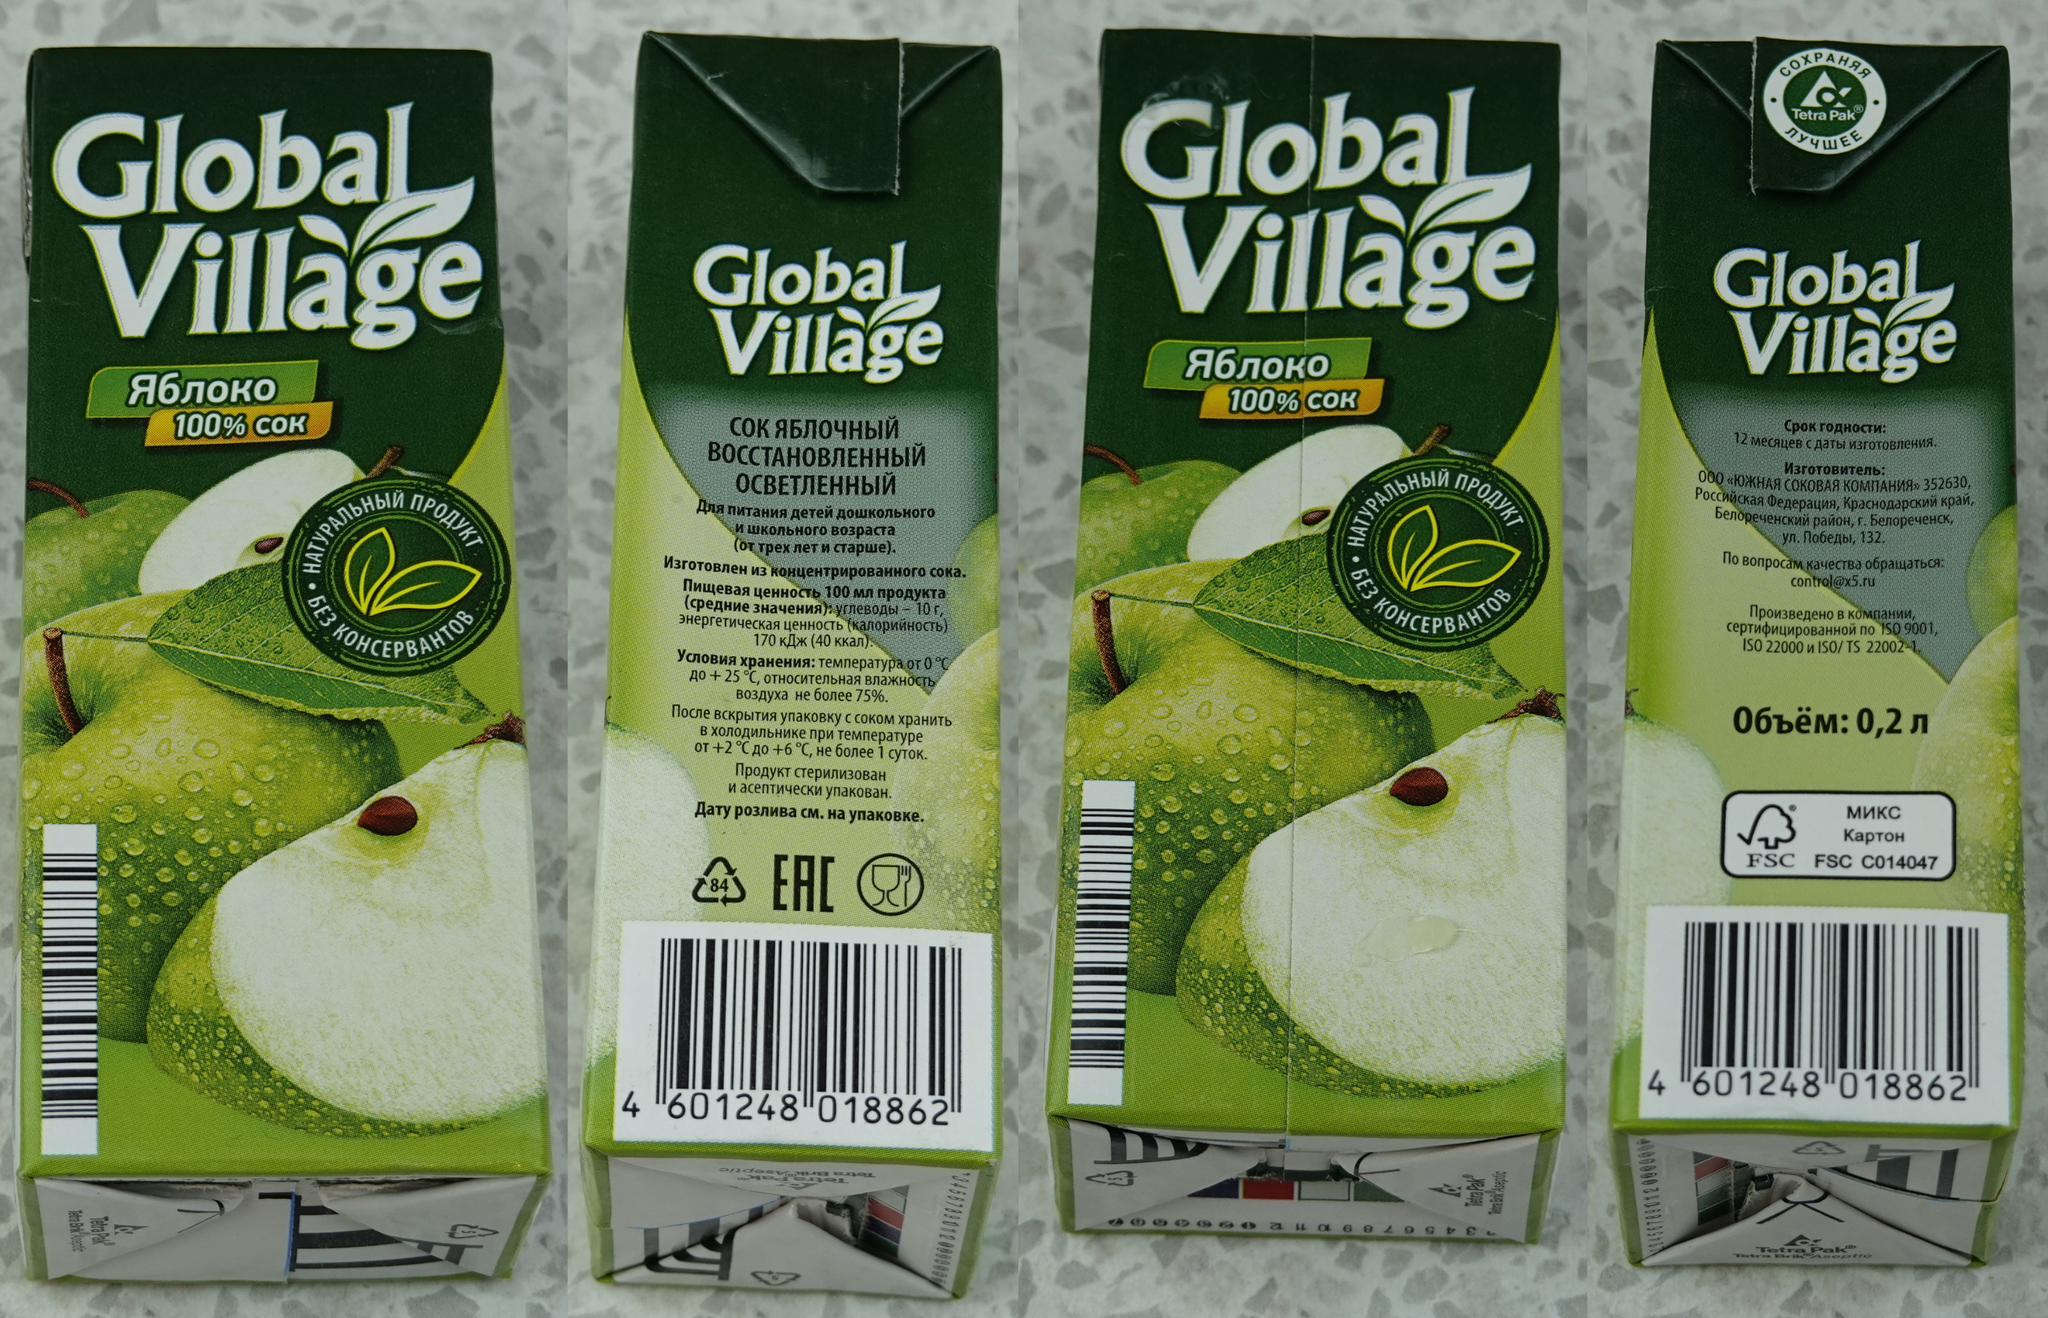 Global village производитель. Global Village сок. Сок Global Village яблоко. Глобал Виладж сок яблочный. Global Village сок производитель.